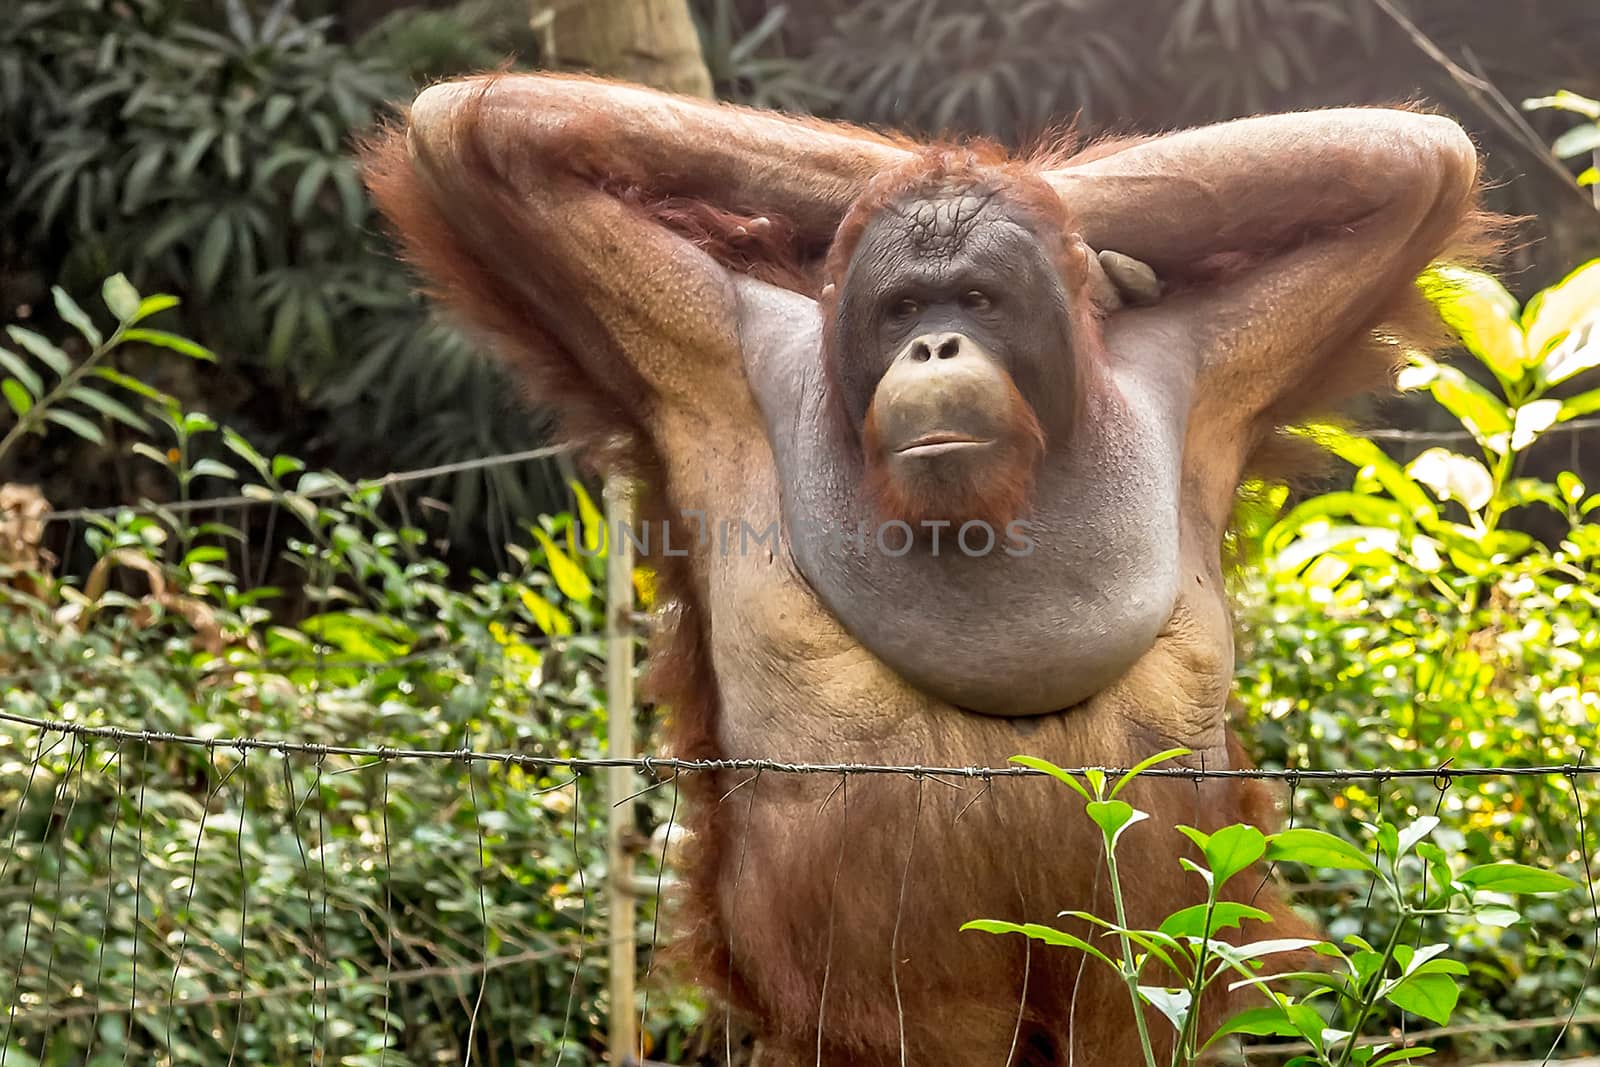 Orangutan photo. Orangutan scene. Orangutan portrait by Vladyslav